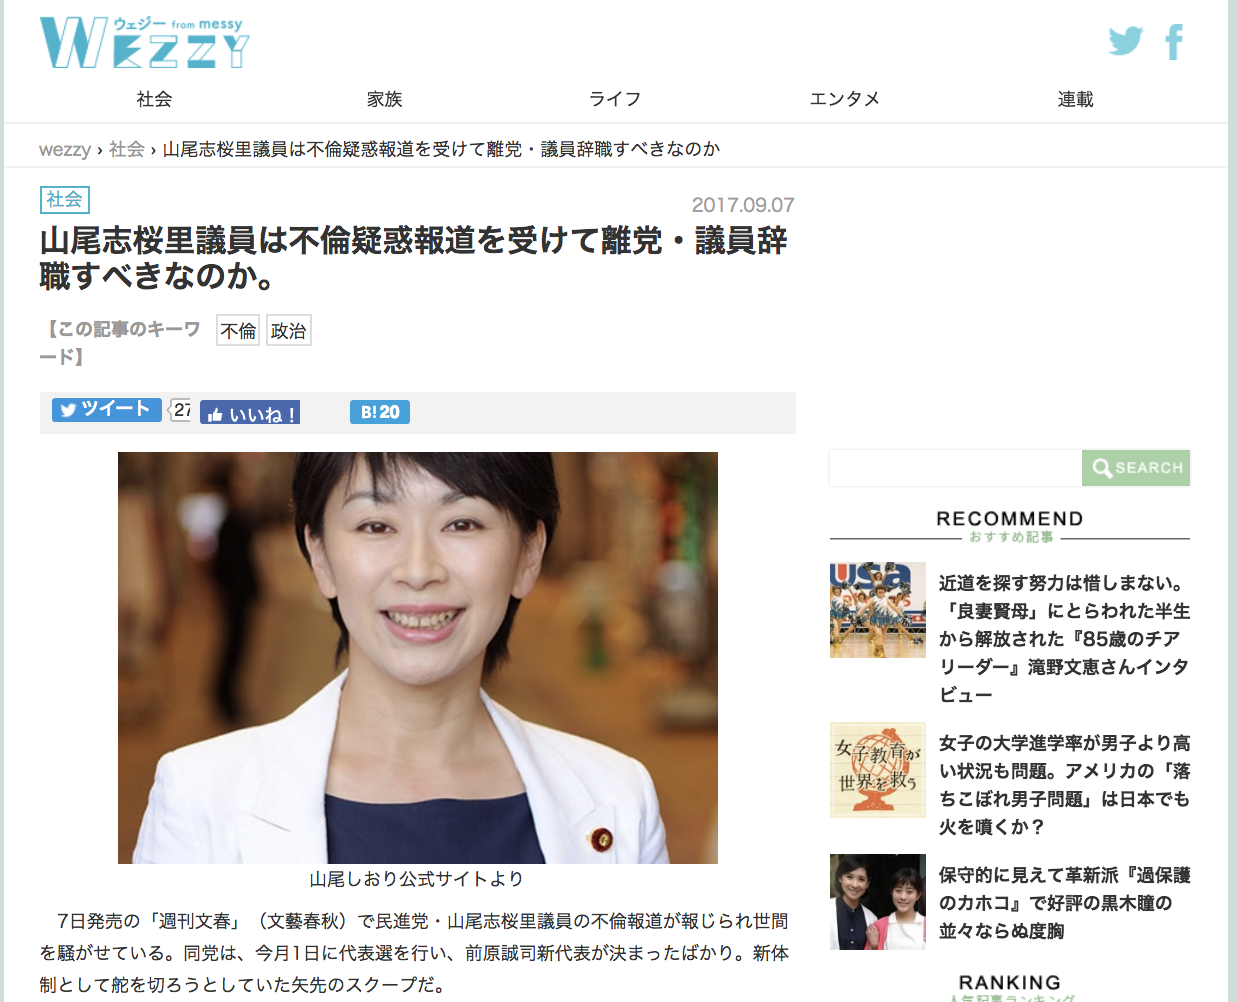 山尾志桜里議員は不倫疑惑報道を受けて離党・議員辞職すべきなのか。